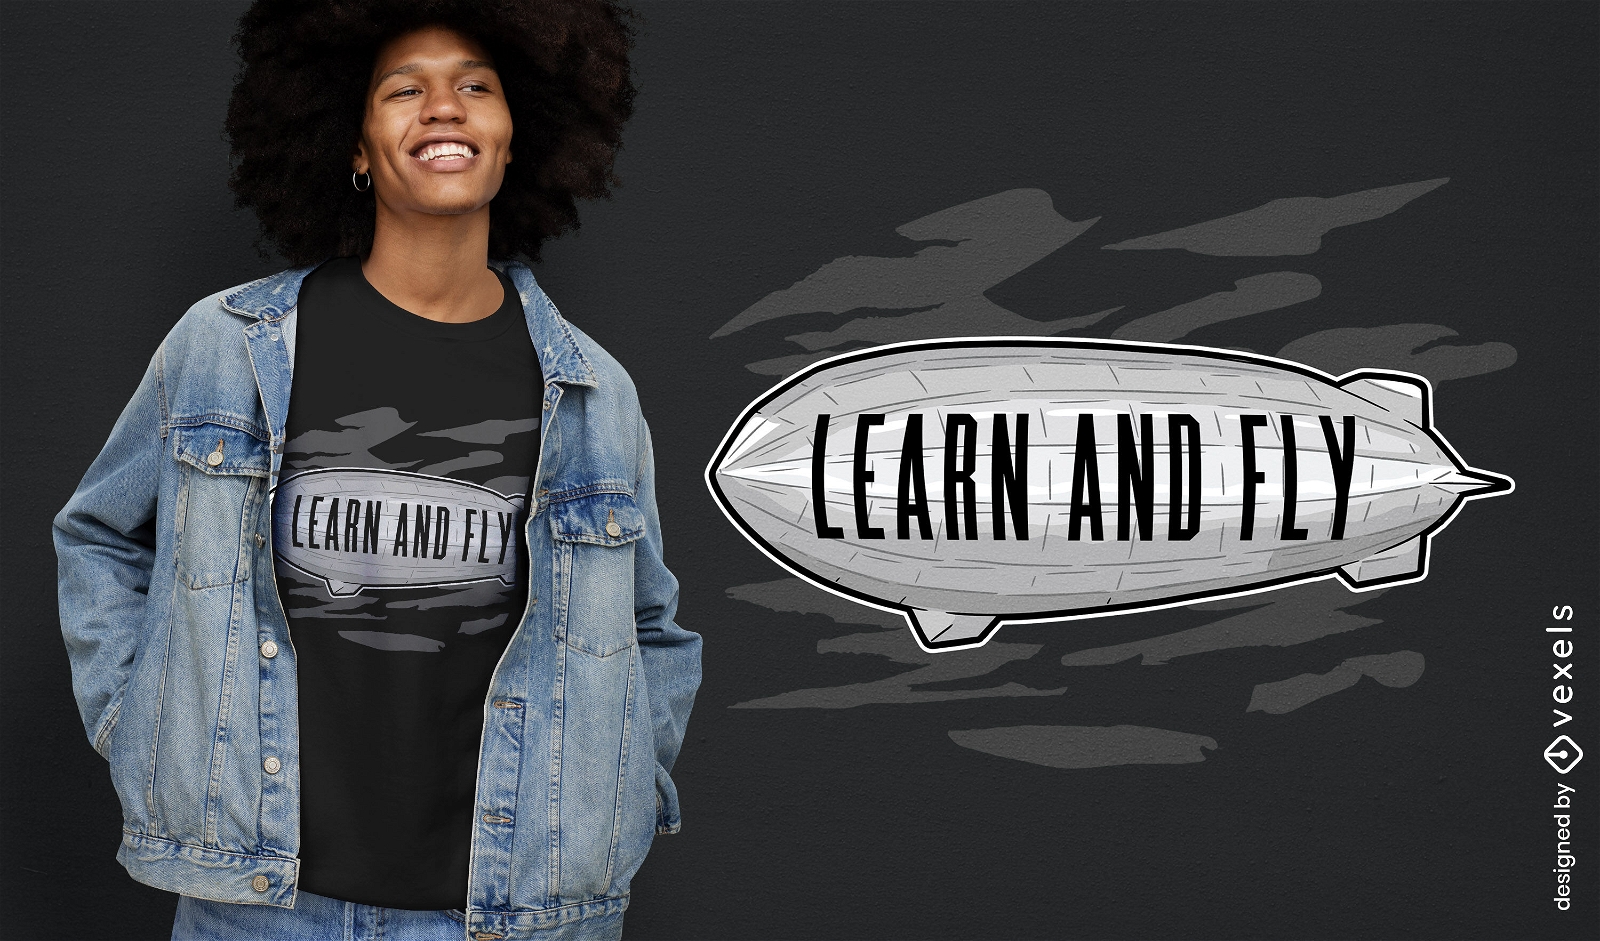 Lerne und gly Zeppelin T-Shirt Design